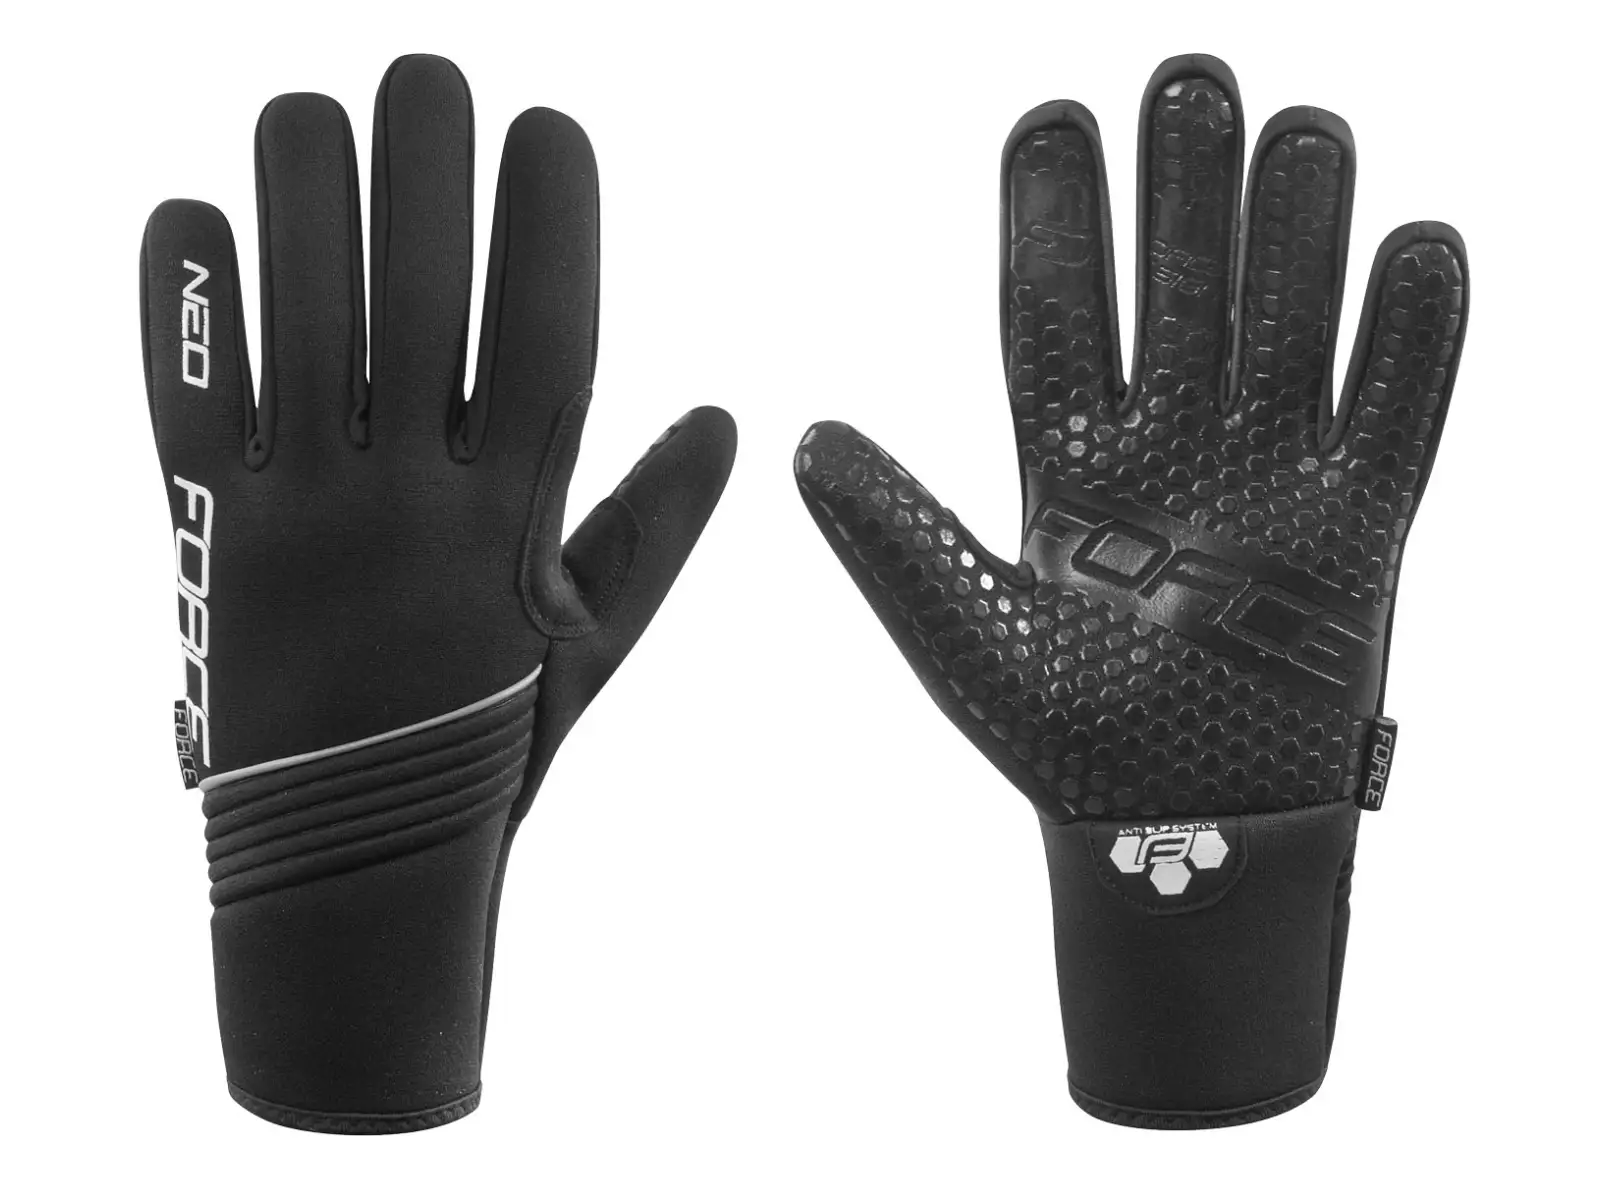 Force Neo zimní rukavice neopren černá